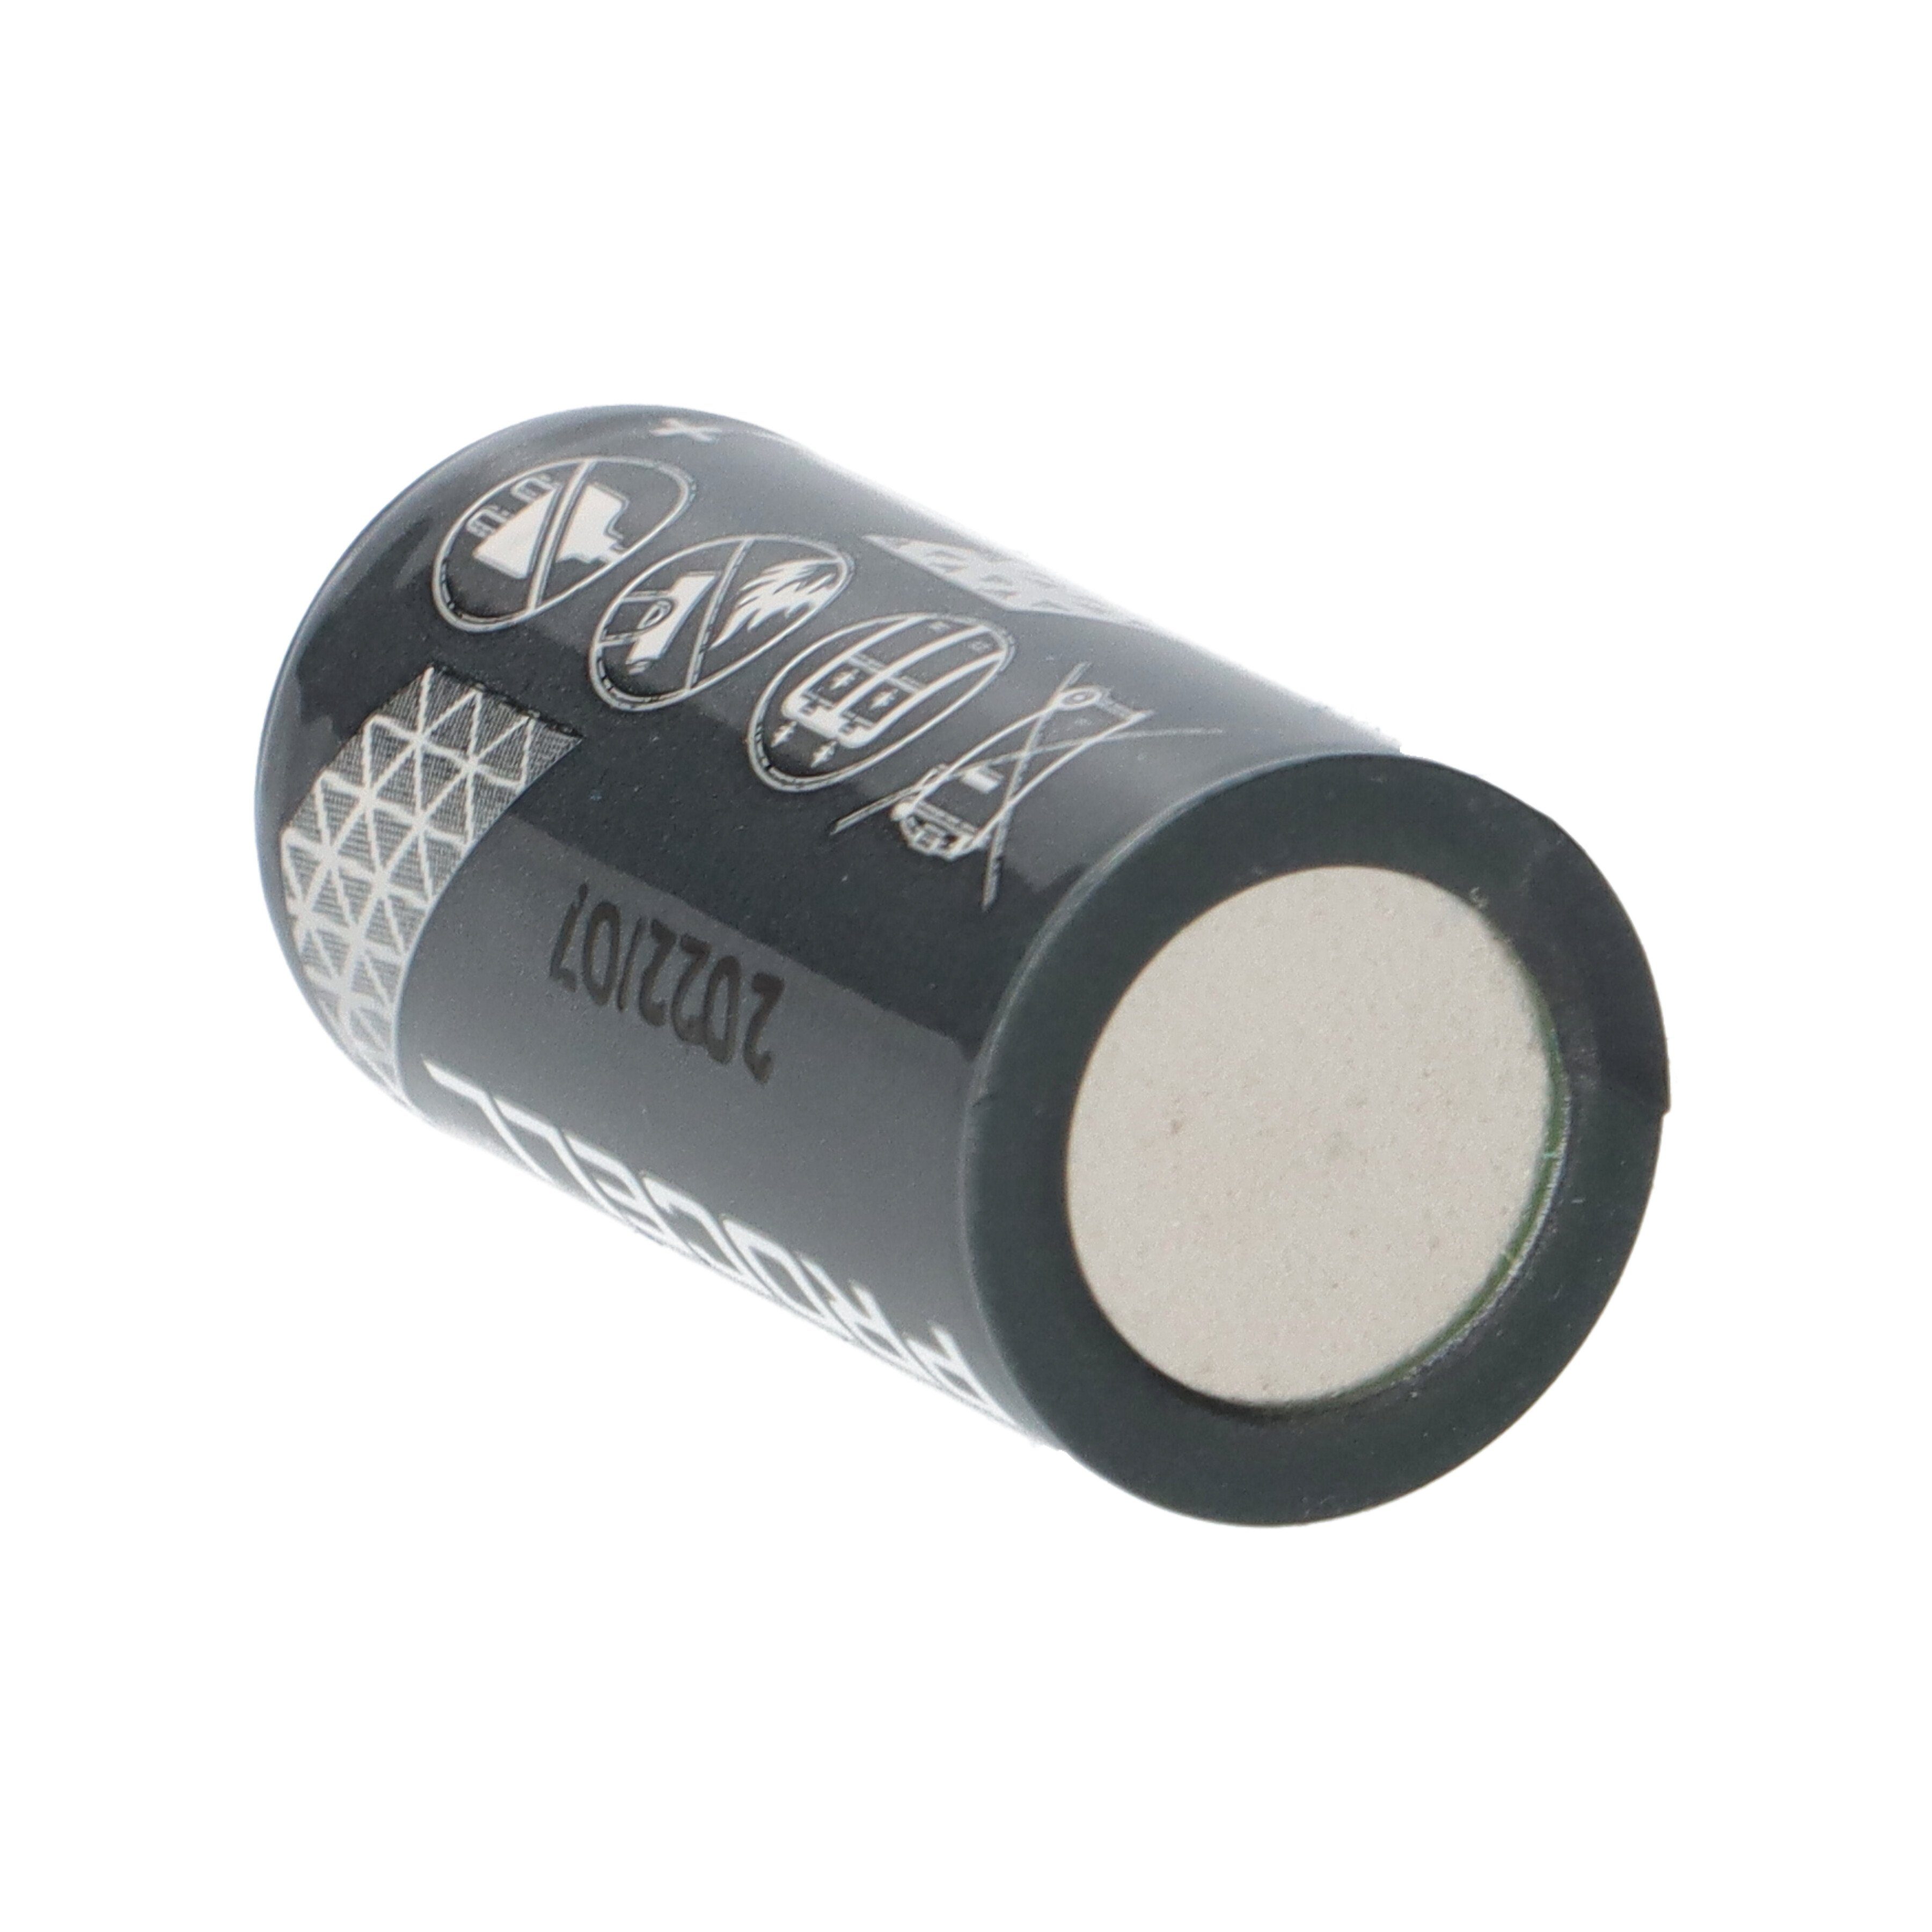 Duracell 100x Procell CR123A 3V 10er Batterie 1550mAh Karton im Lithium